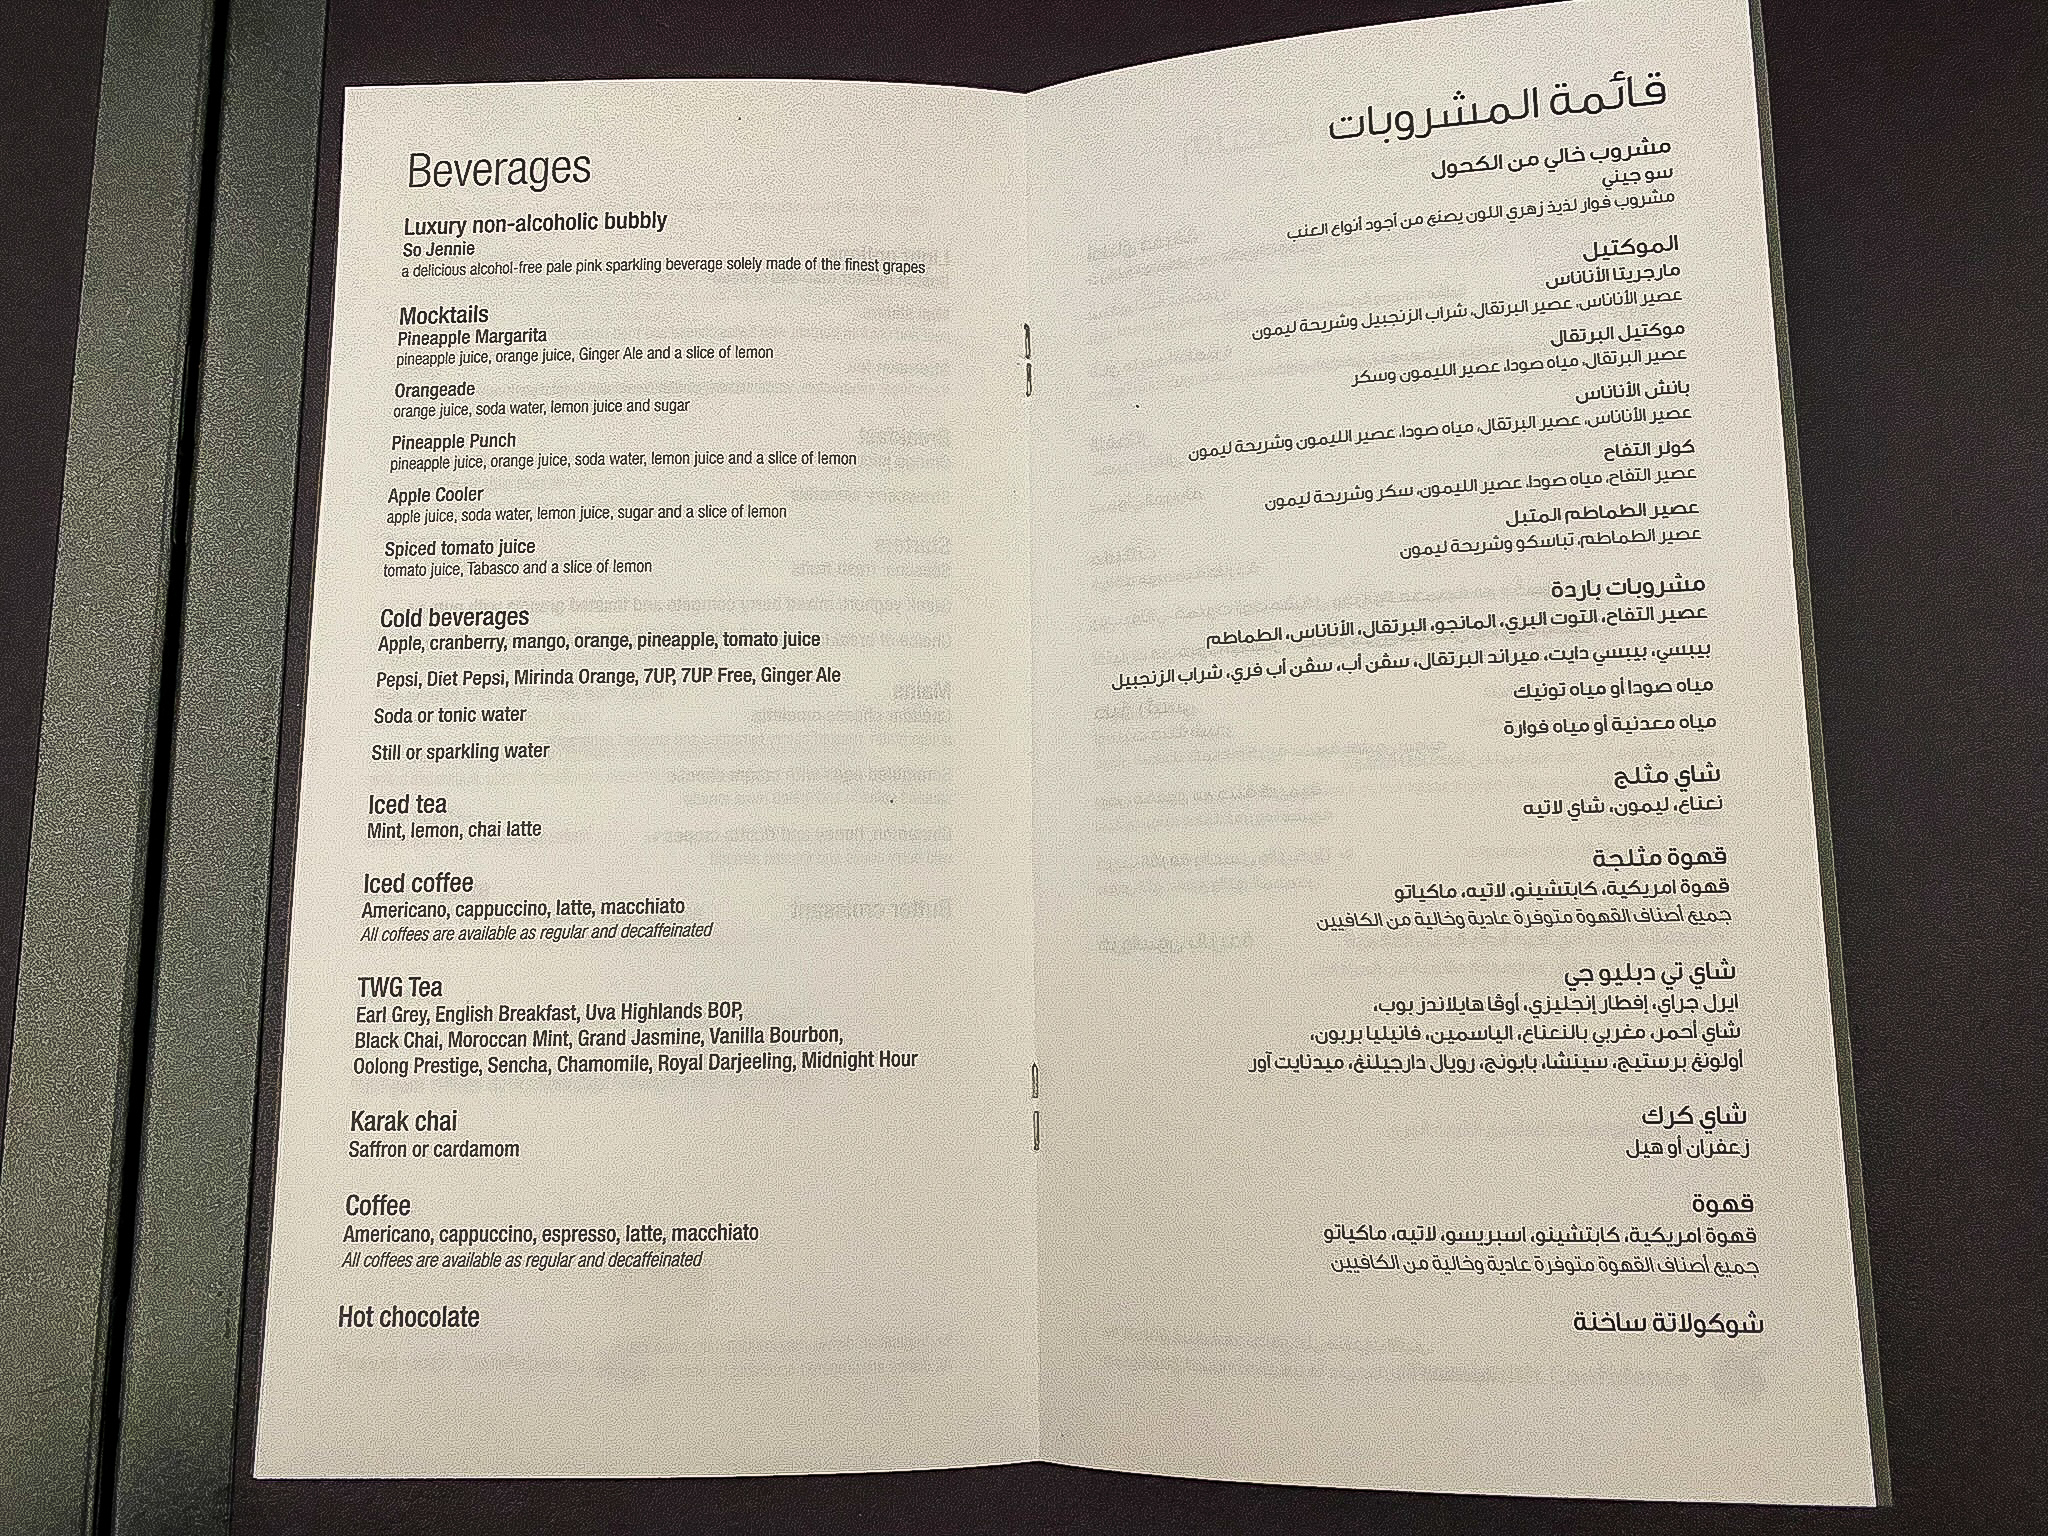 Qatar Airways Qsuites food menu 2